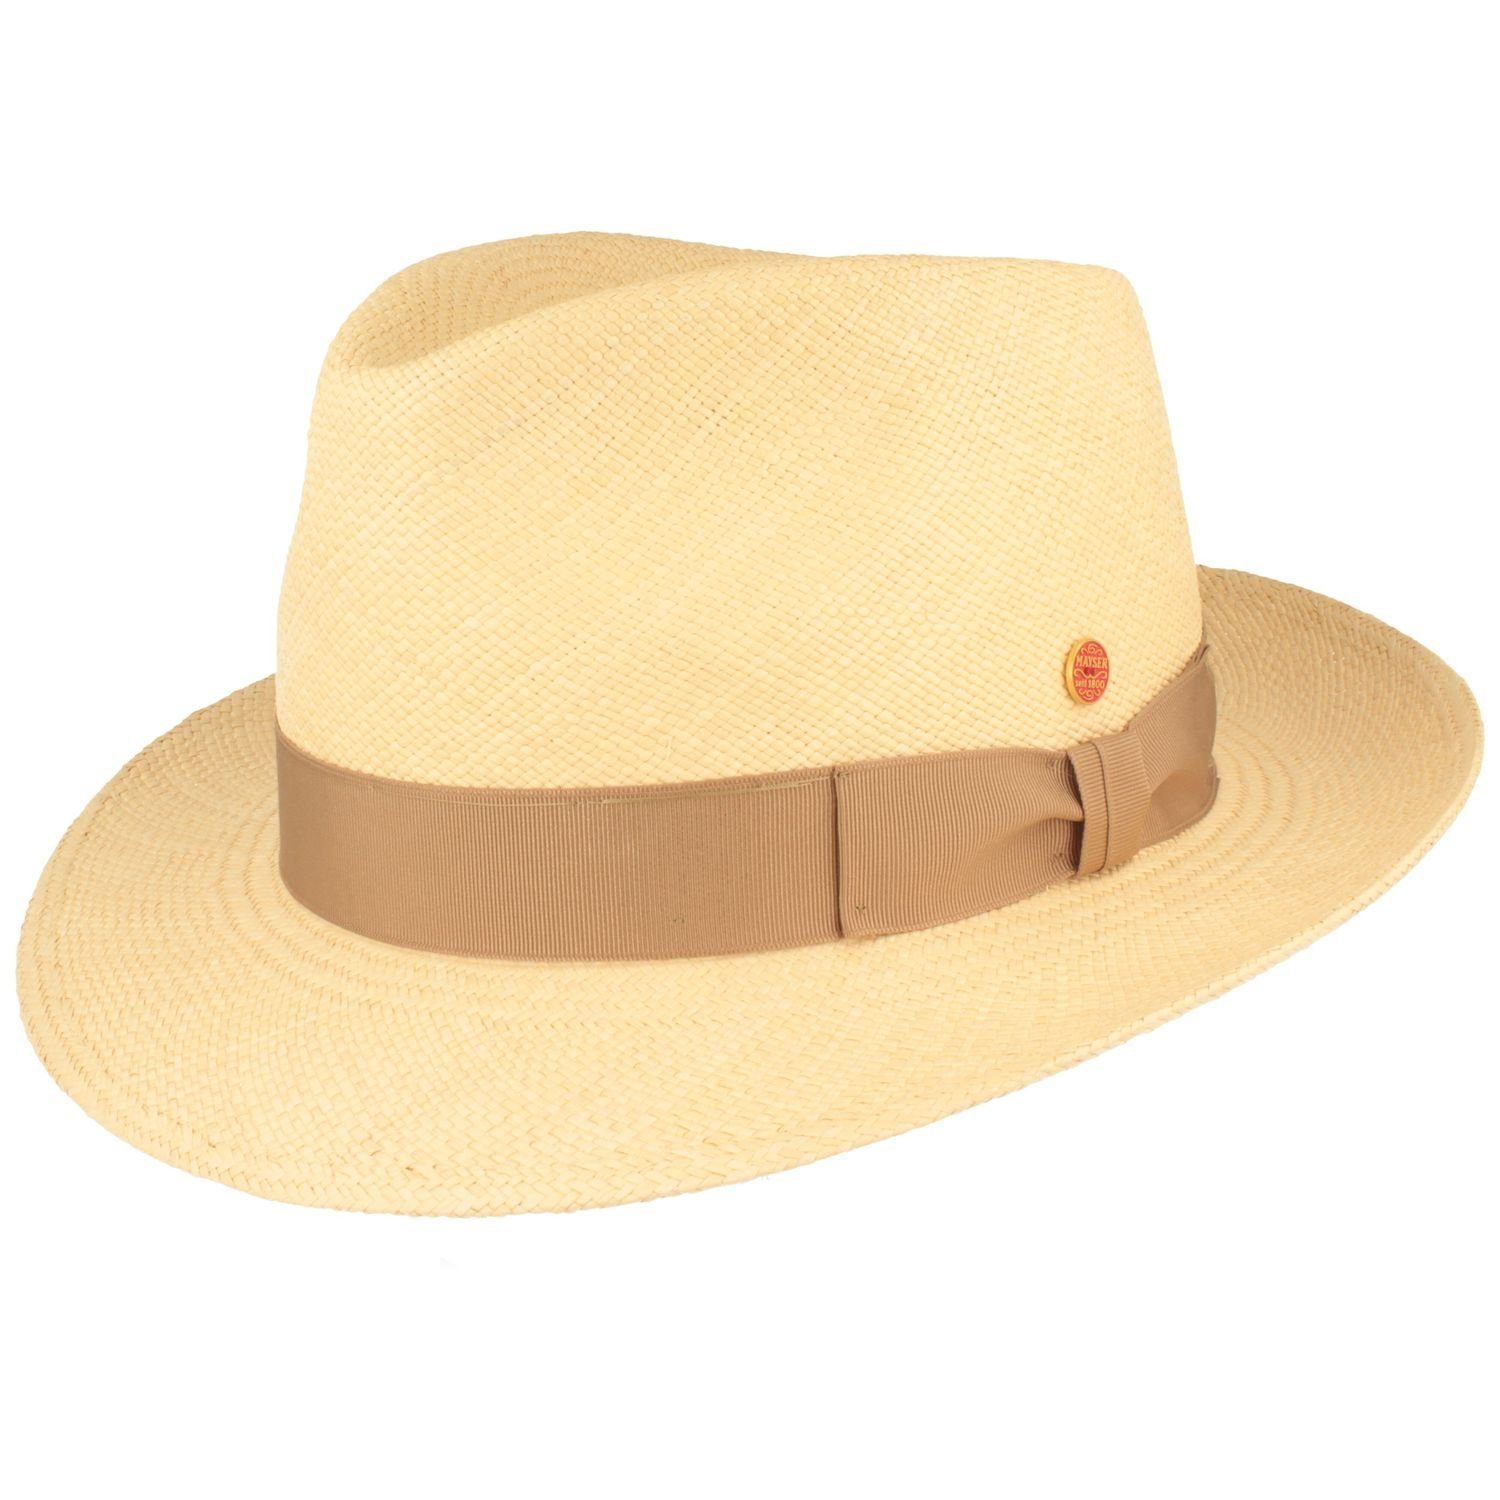 Mayser Strohhut wasserabweisender, hochwerigter Panama Hut Manuel mit UV-Schutz 80 0004 natur/7001 beige